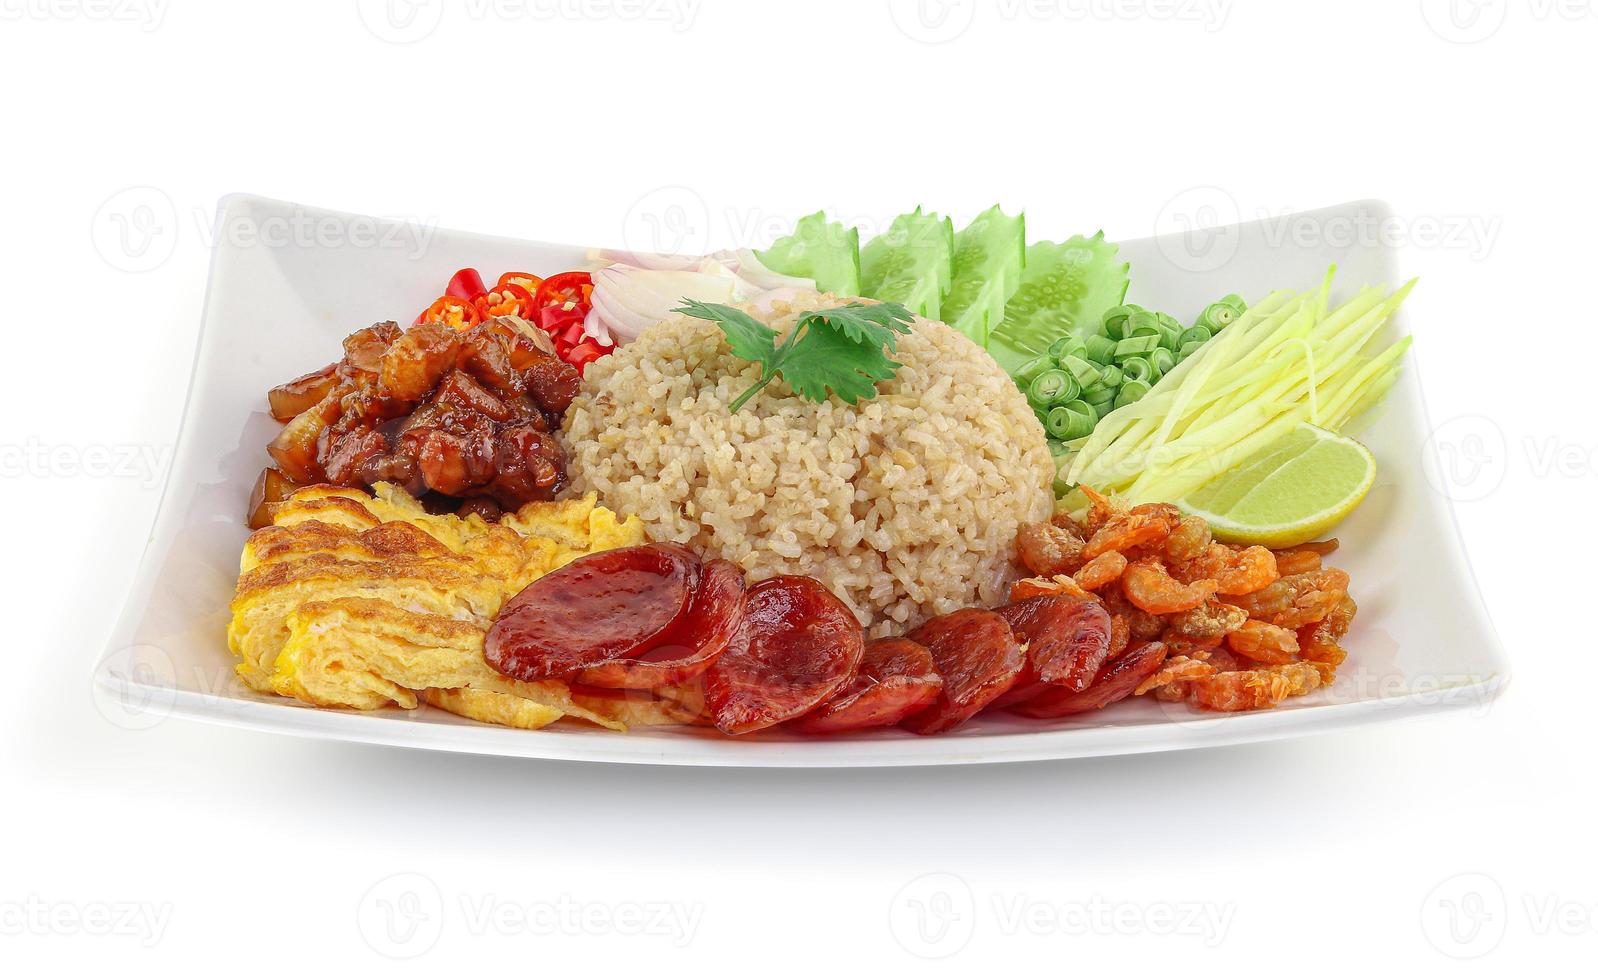 arroz temperado com pasta de camarão e cebola roxa, feijão, manga e ovo frito em prato branco com fundo branco foto